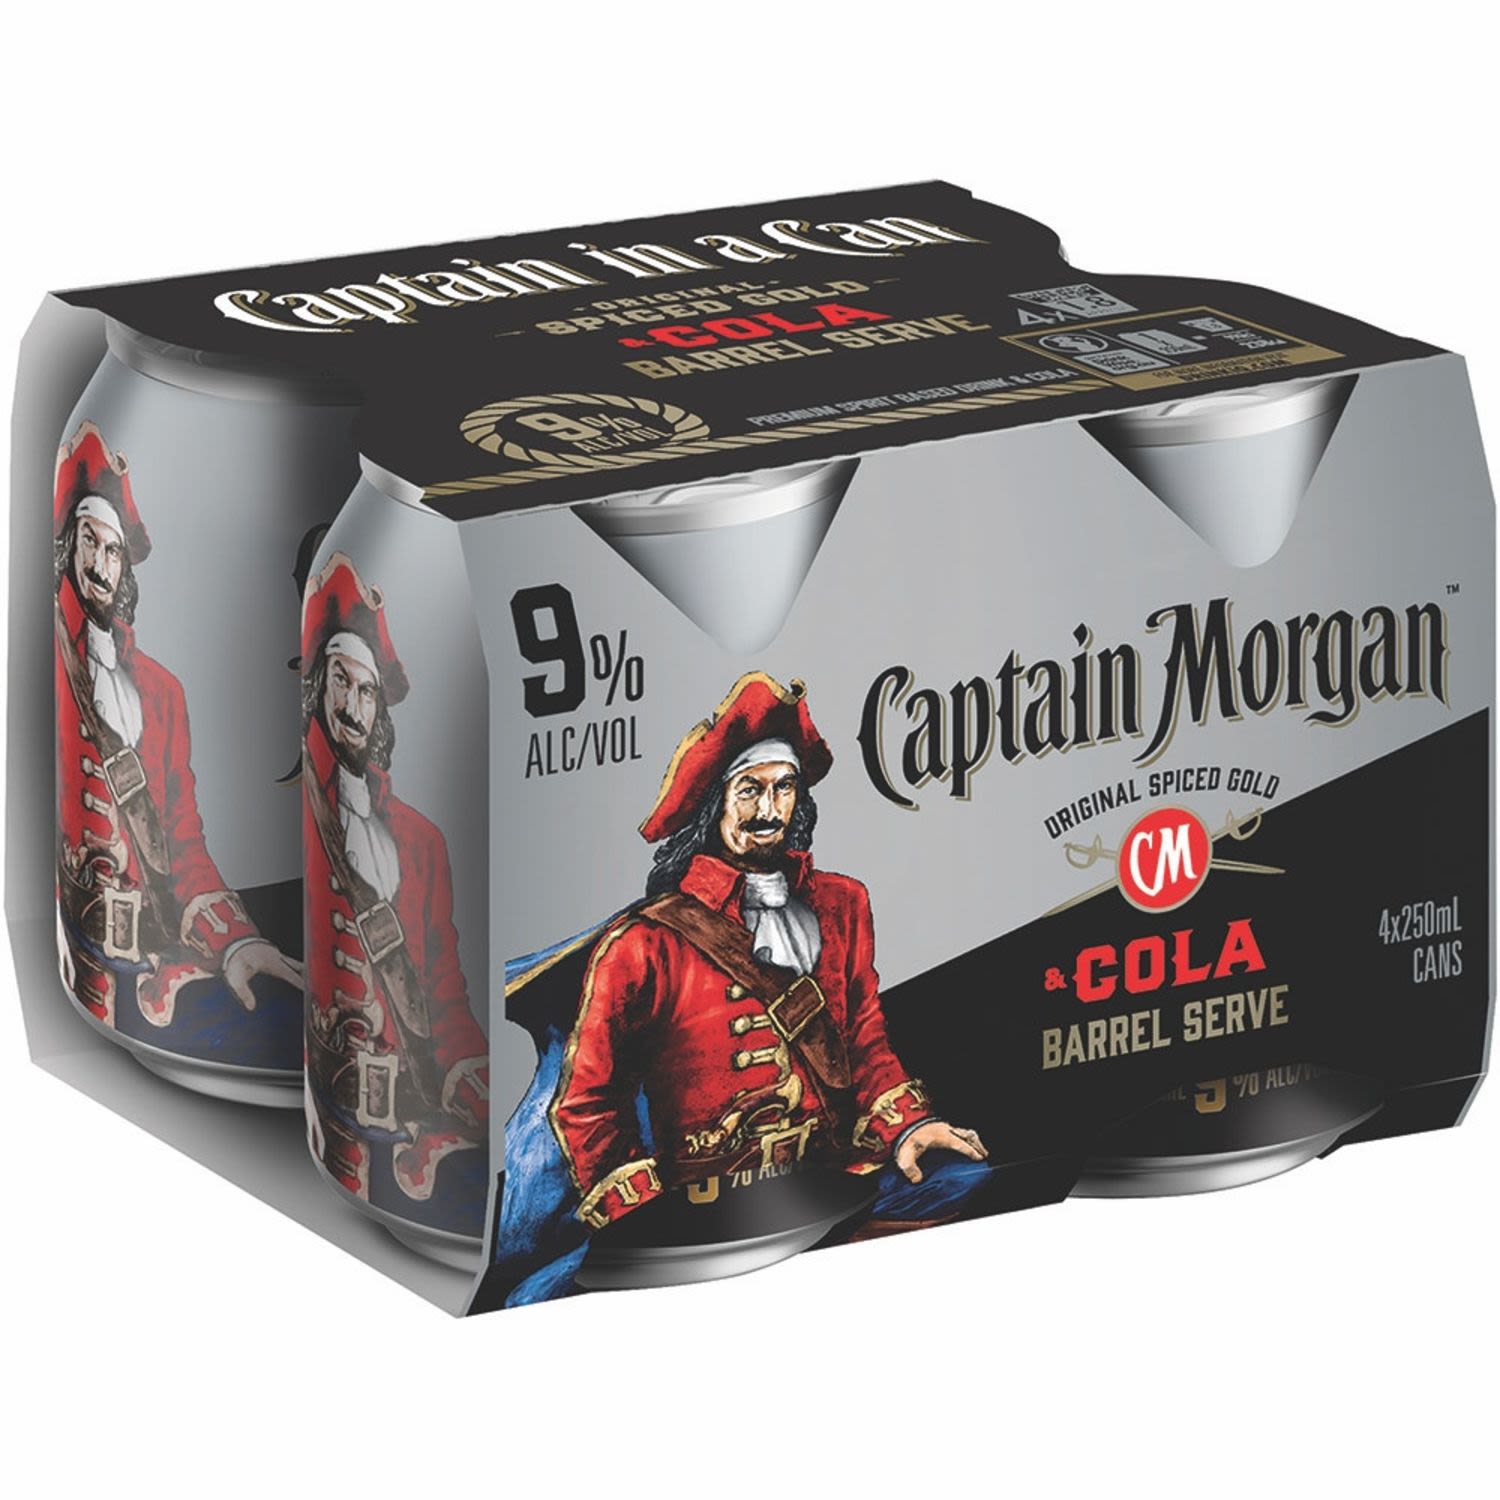 Captain Morgan & Cola Barrel Serve 9% Can 250mL 4 Pack